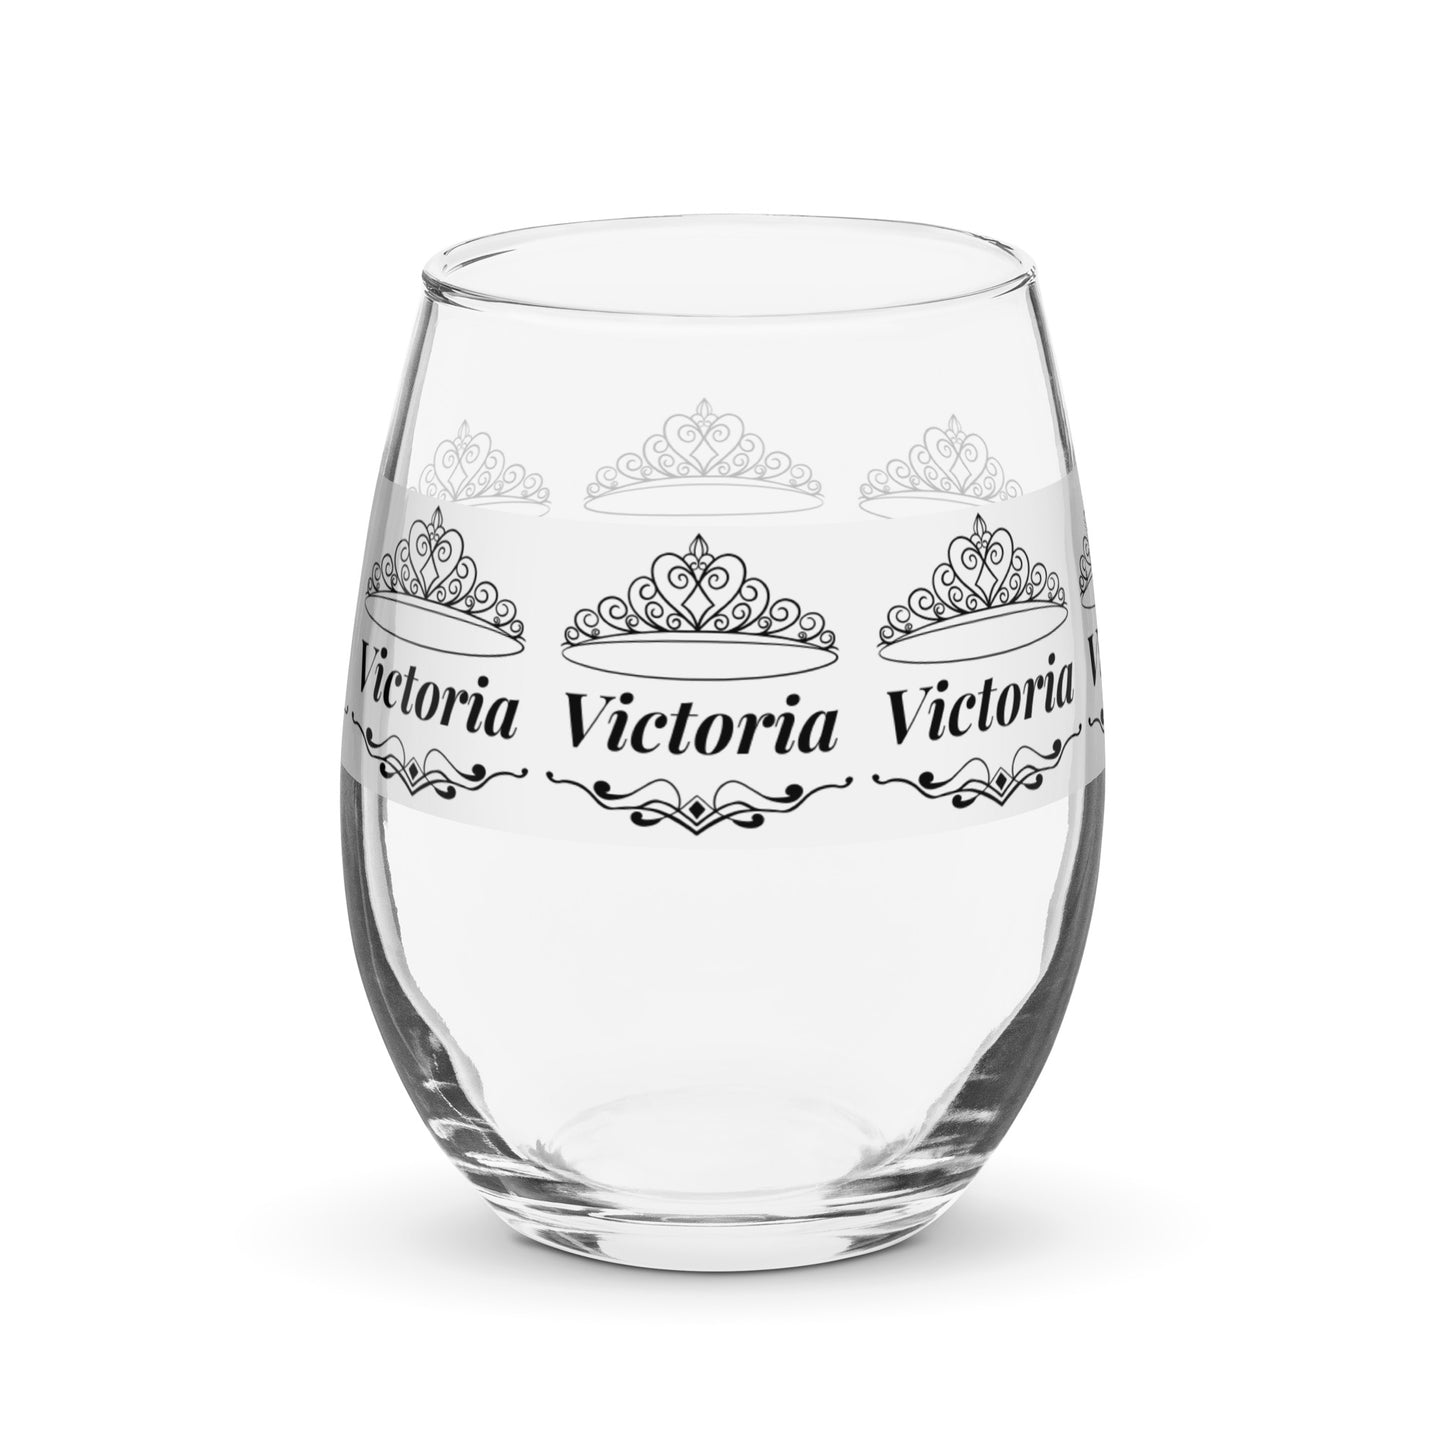 nombre copa de vino copa de vino personalizada Copa de vino Victoria